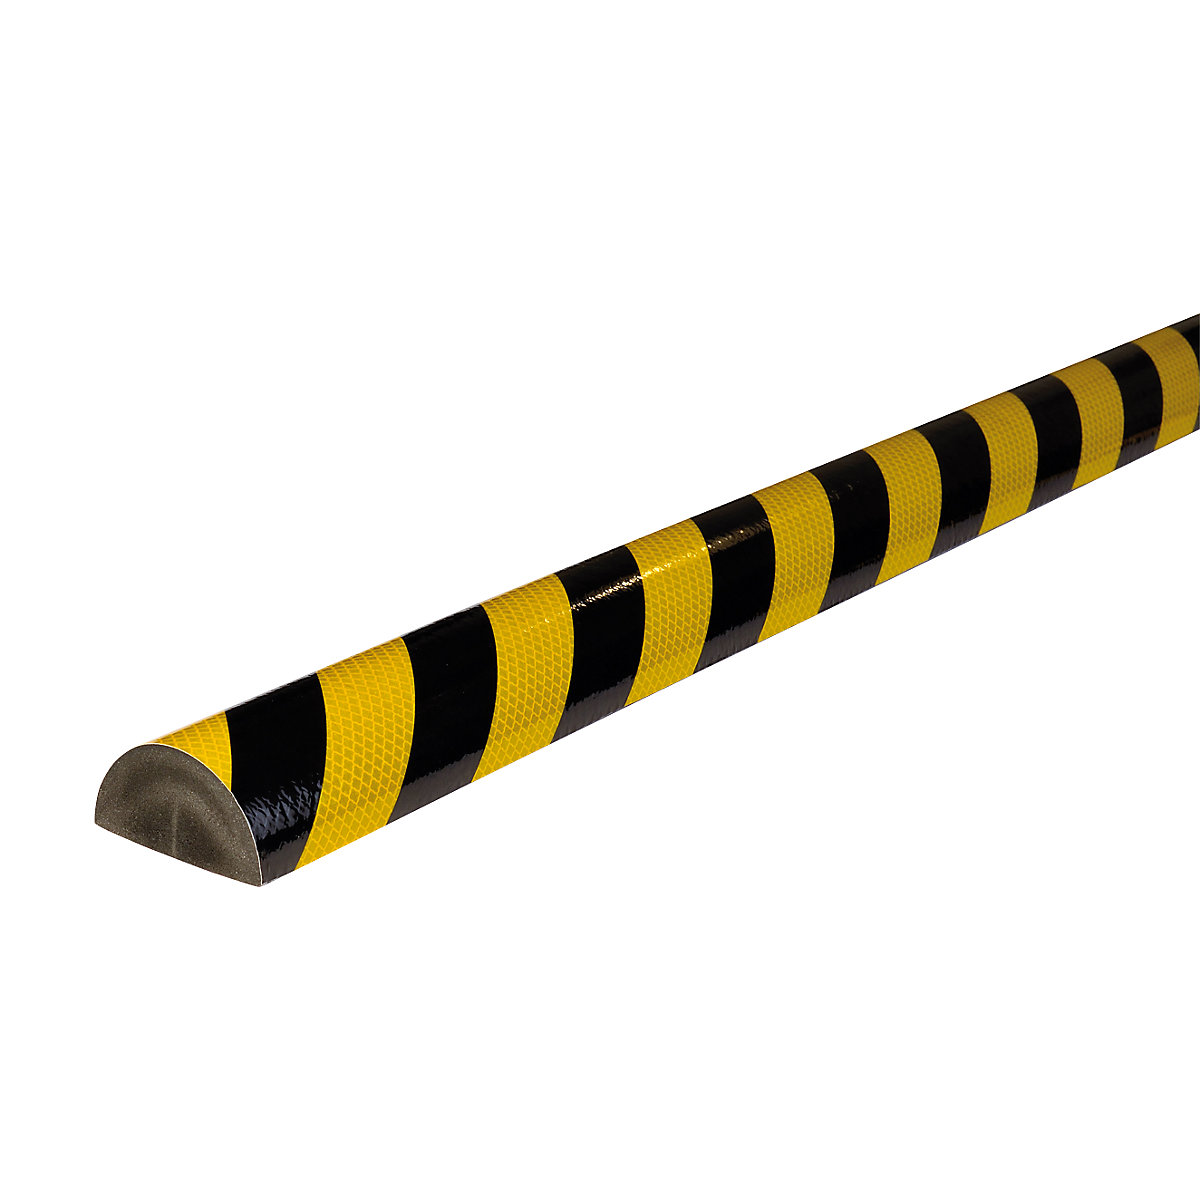 Zabezpieczenie powierzchni Knuffi® – SHG, typ C+, szt. 1 m, żółty /czarny, odblaskowy-19